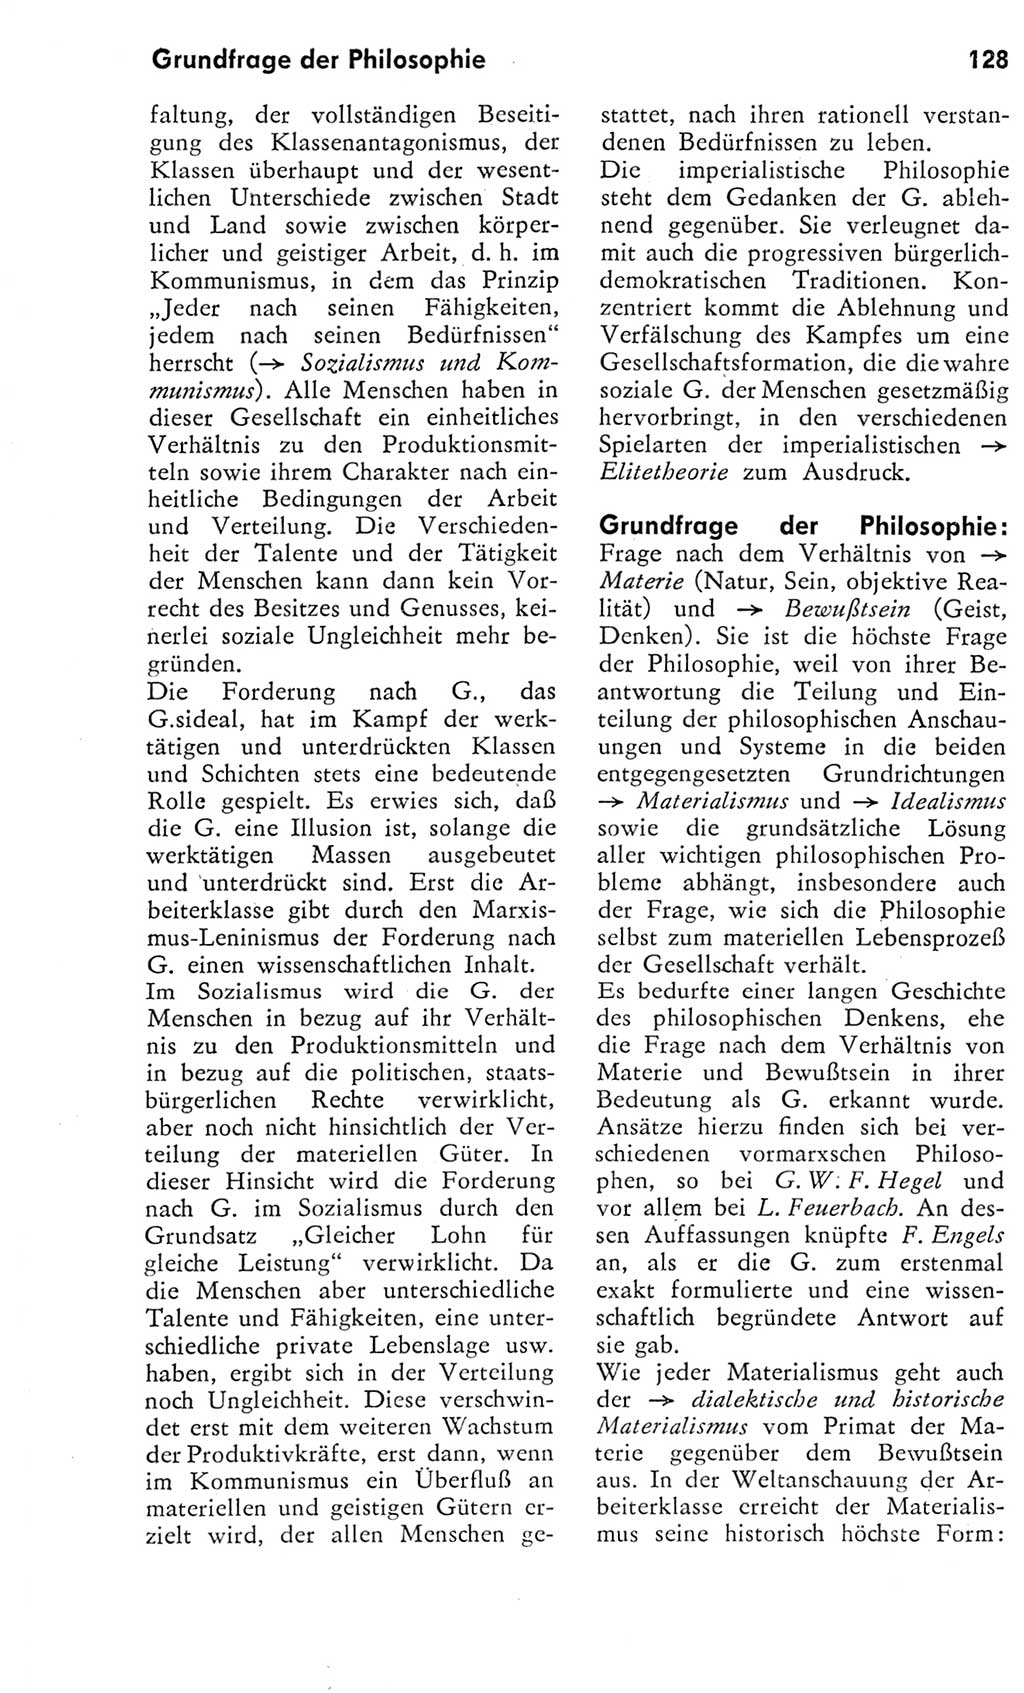 Kleines Wörterbuch der marxistisch-leninistischen Philosophie [Deutsche Demokratische Republik (DDR)] 1975, Seite 128 (Kl. Wb. ML Phil. DDR 1975, S. 128)